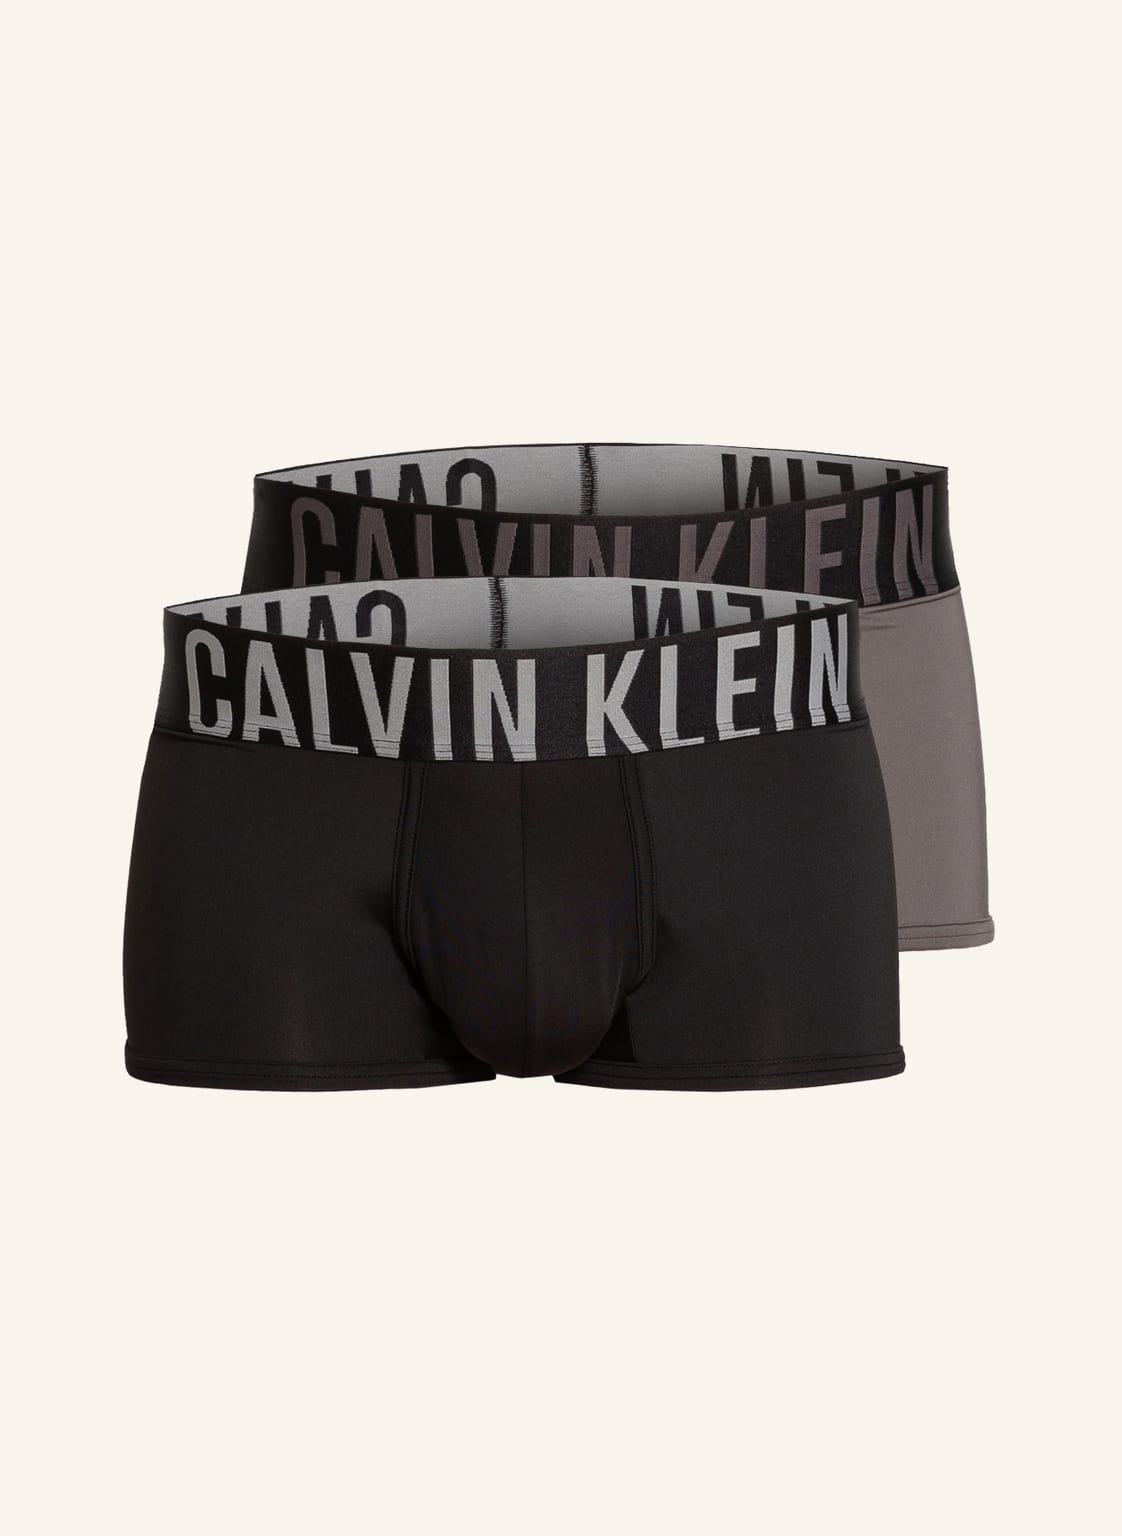 Calvin Klein Bokserki Intense Power Low Rise, 2 Szt schwarz